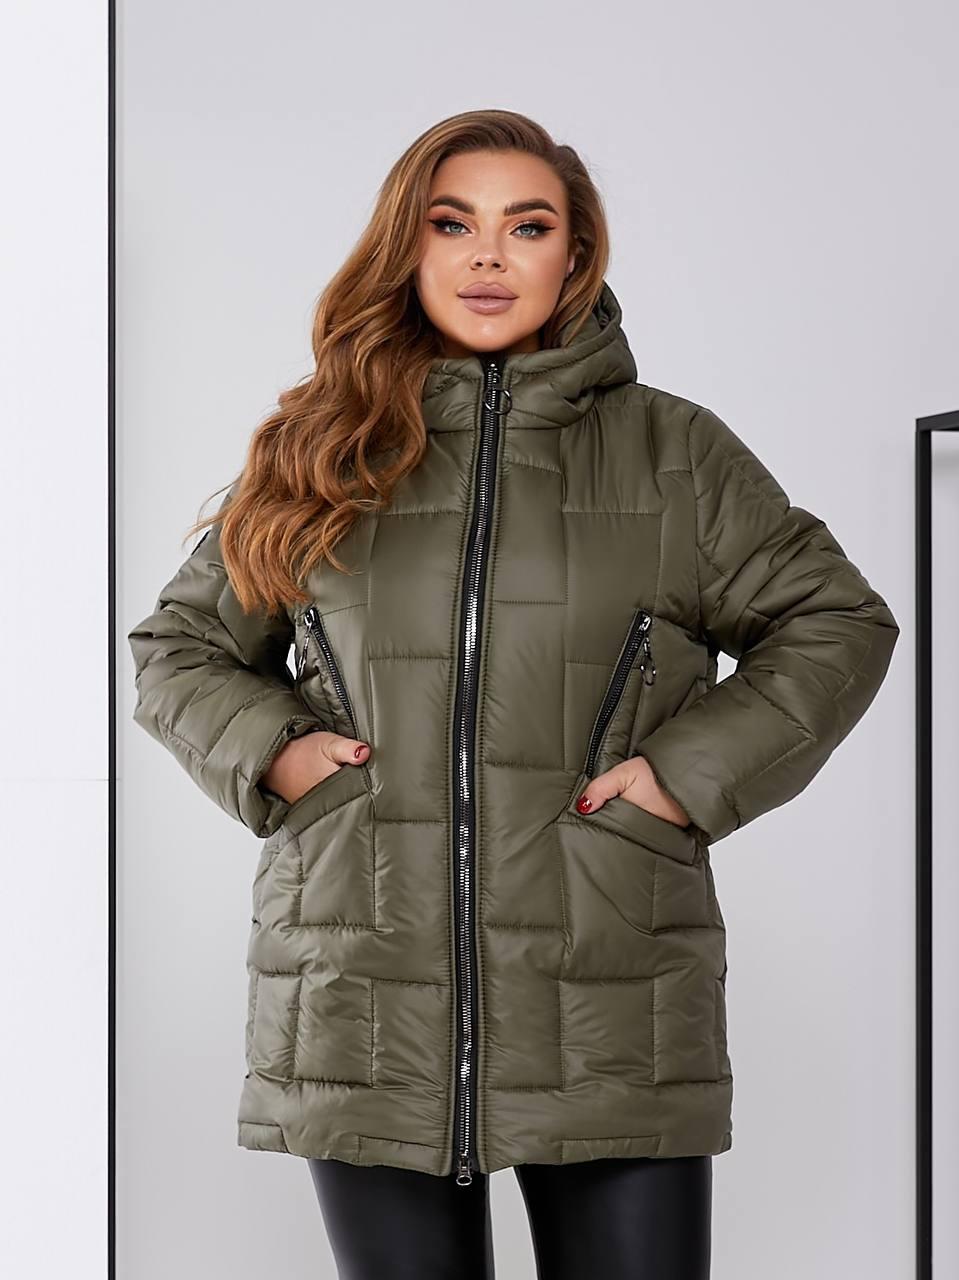 Жіноча зимова куртка у великому розмірі батал Розміри: 48-50, 52-54, 56-58